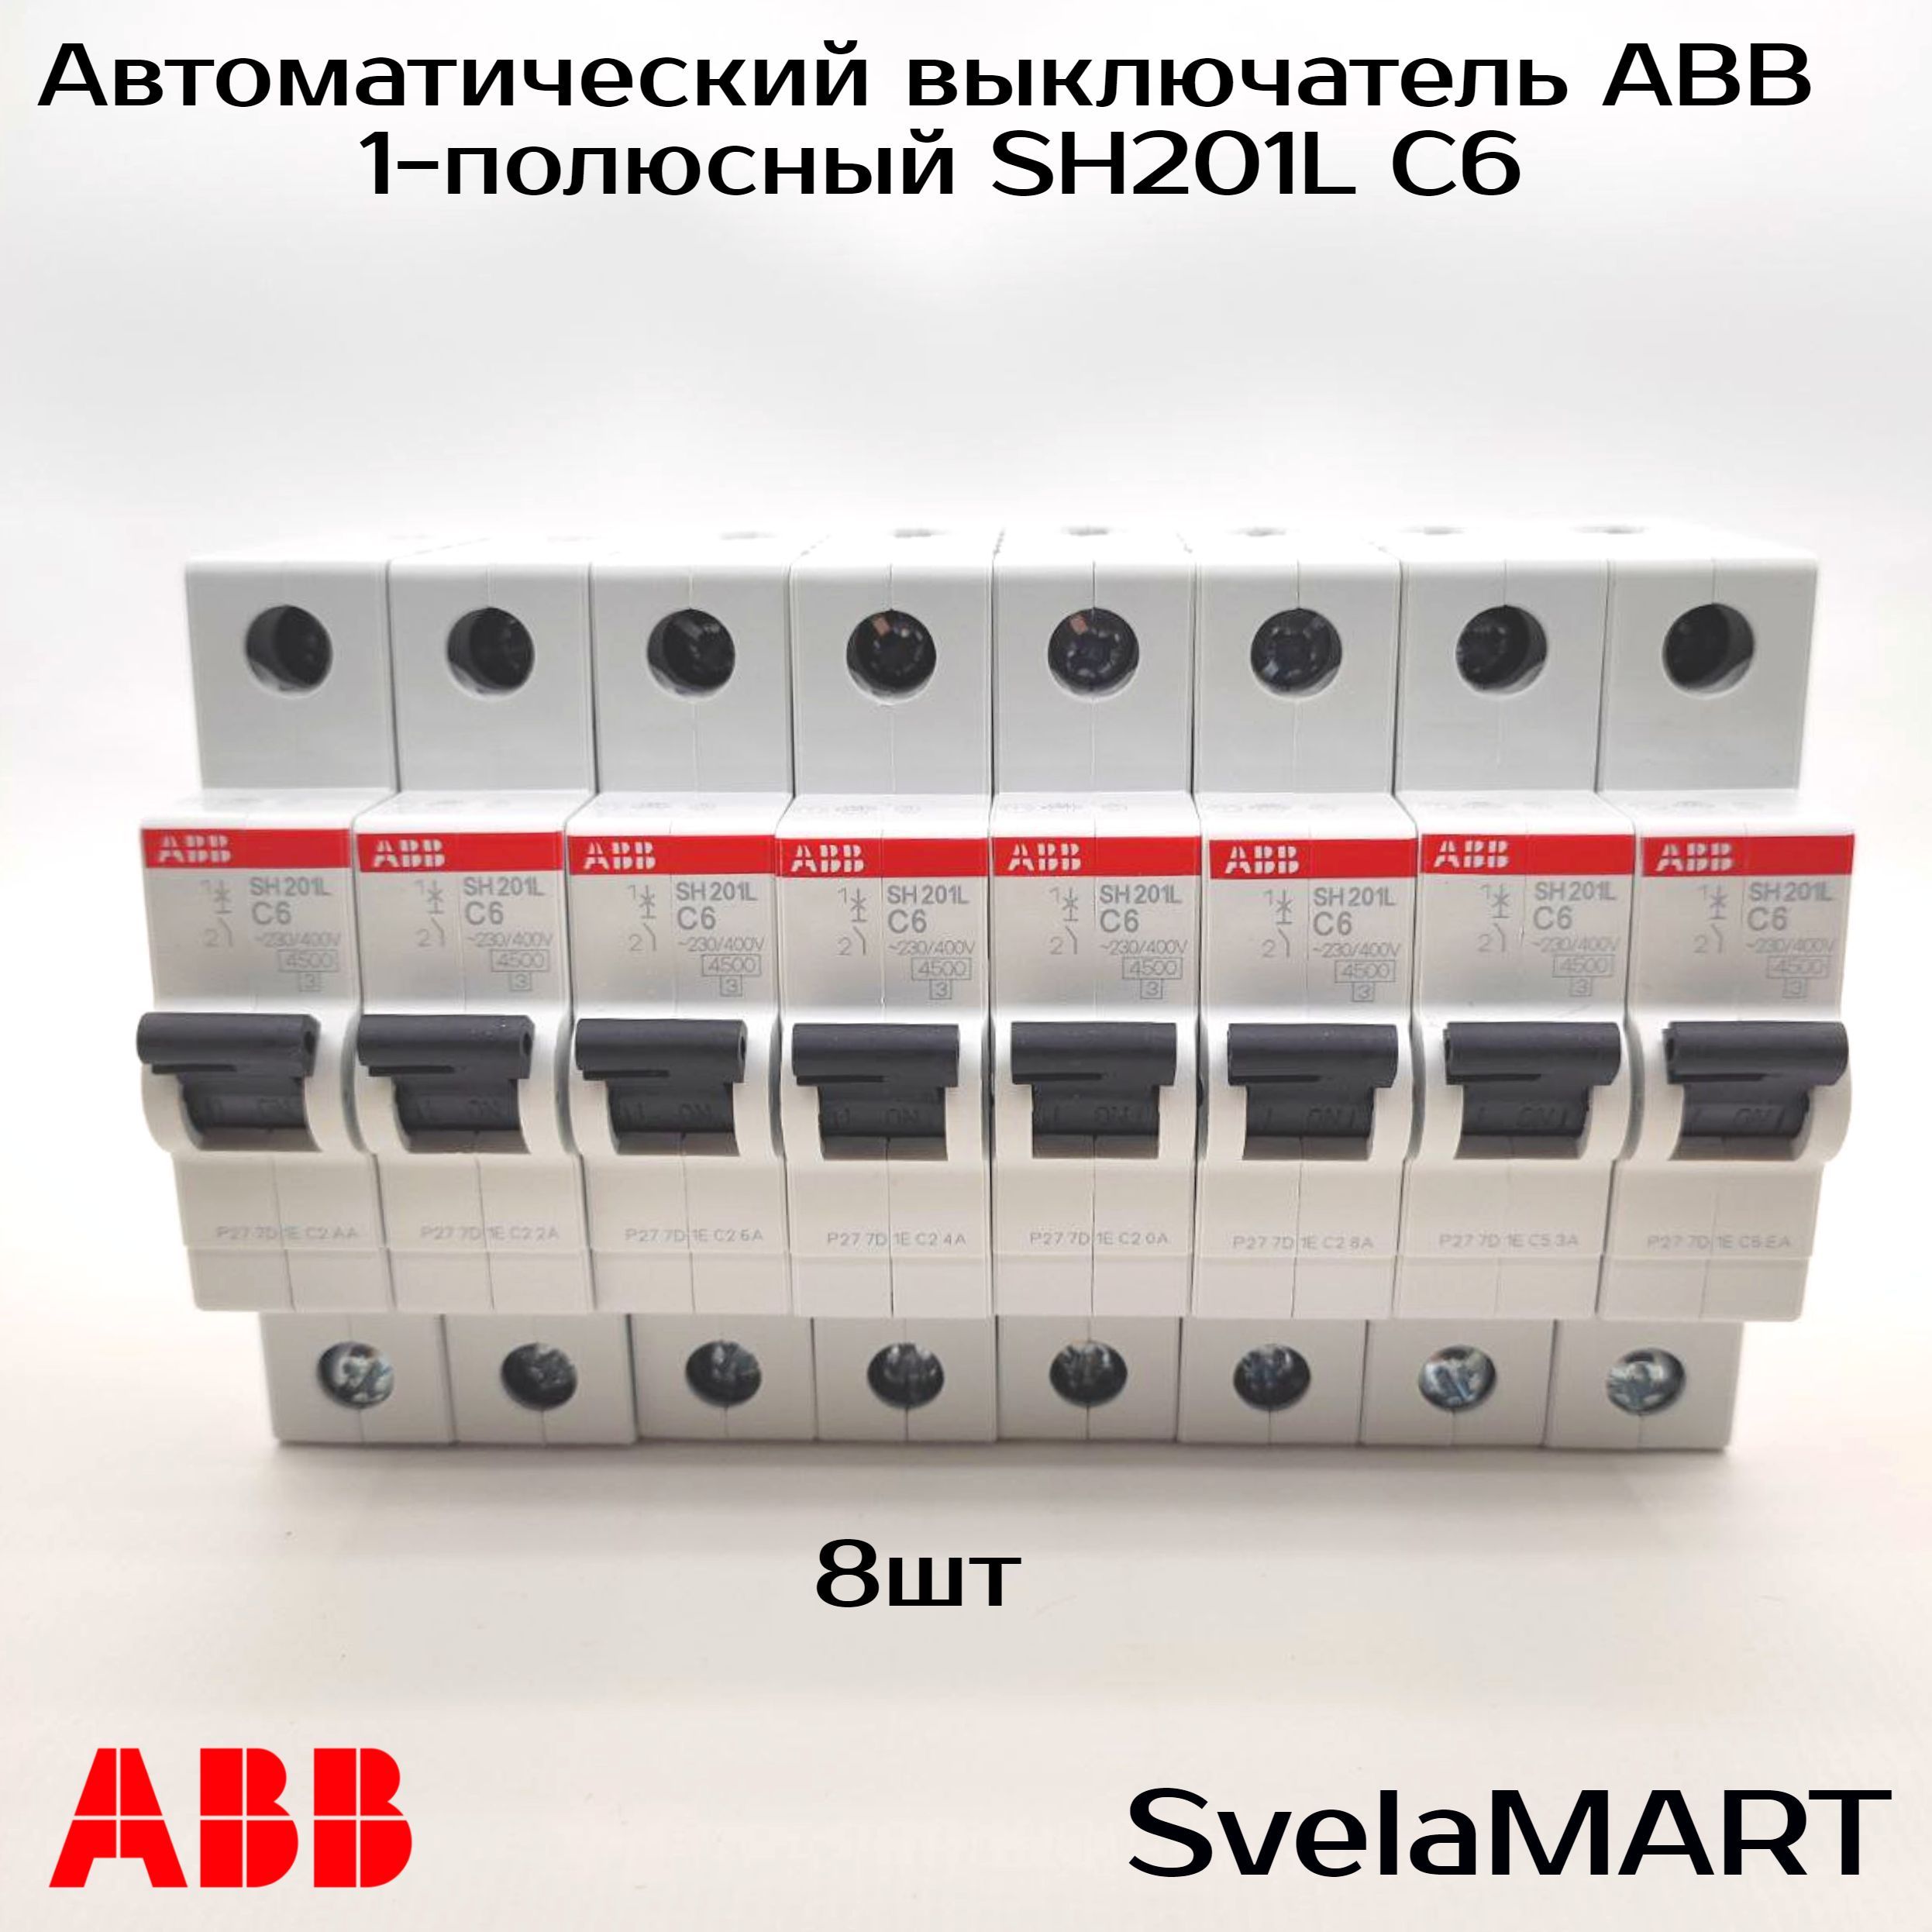 Однополюсные автоматические выключатели abb. Автомат 20 ампер ABB. Автомат ABB 25 ампер. Автомат электрический АВВ 16а. Выключатель автоматический однополюсный 40а с sh201l 4.5ка (sh201l c40).